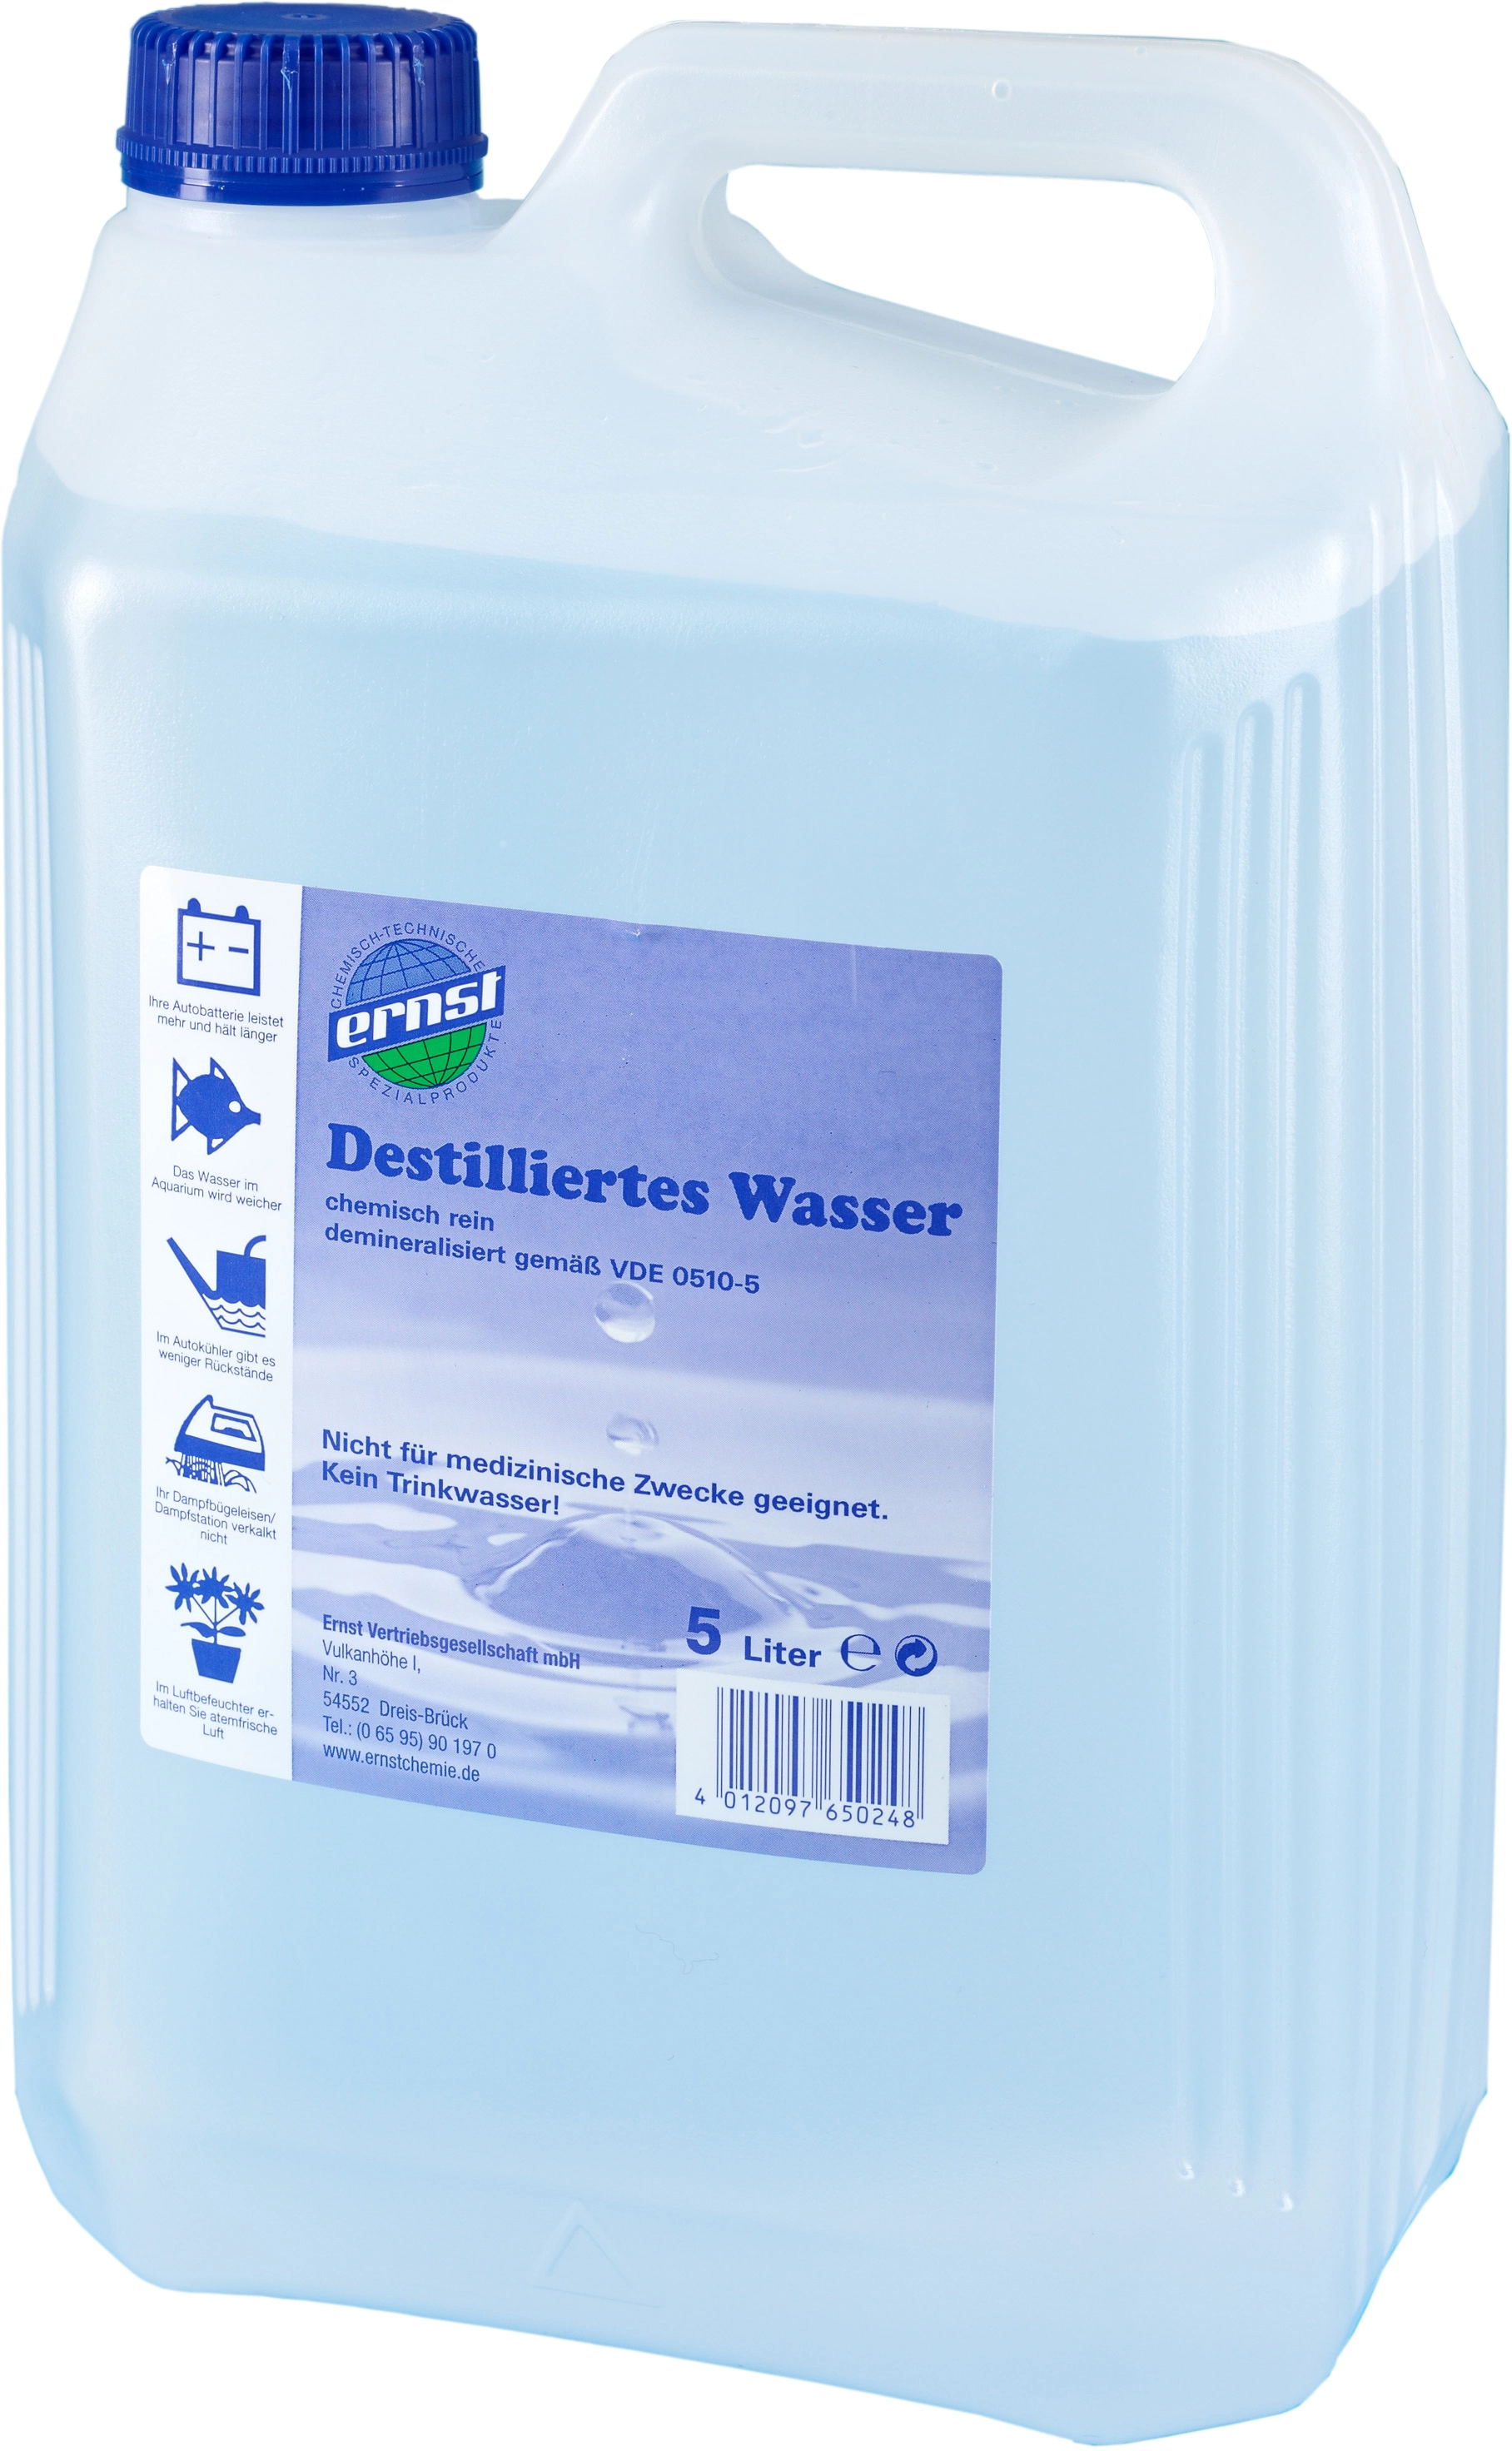 Destilliertes Wasser 5 Liter bei Mercateo günstig kaufen